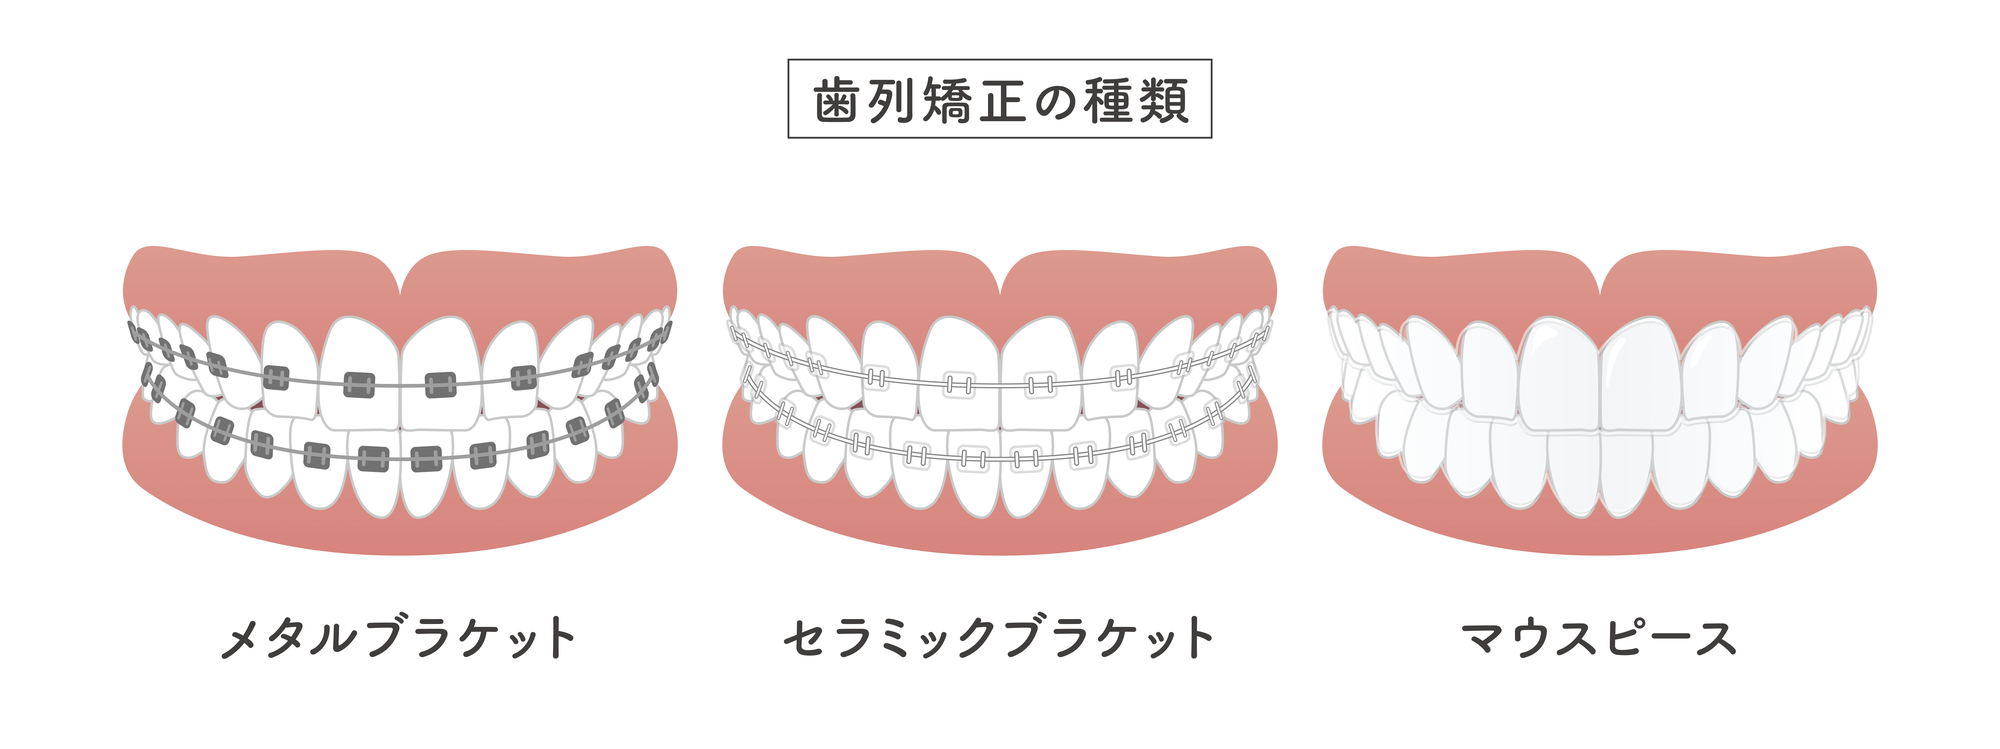 歯列矯正の種類